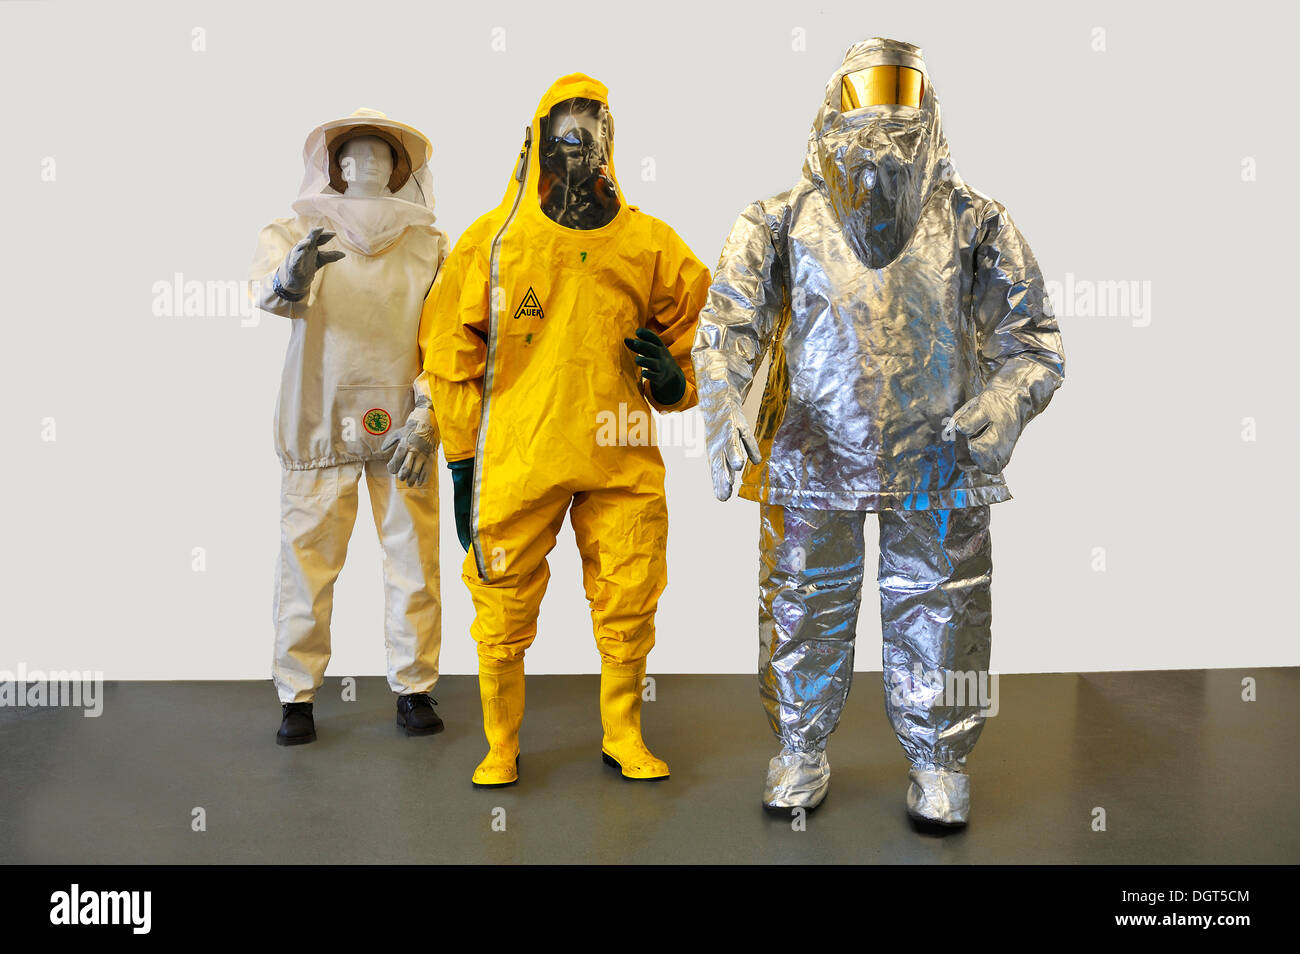 Trois costumes contemporains du service des incendies, les vêtements de protection, une combinaison de protection chimique avec un masque respiratoire, Banque D'Images